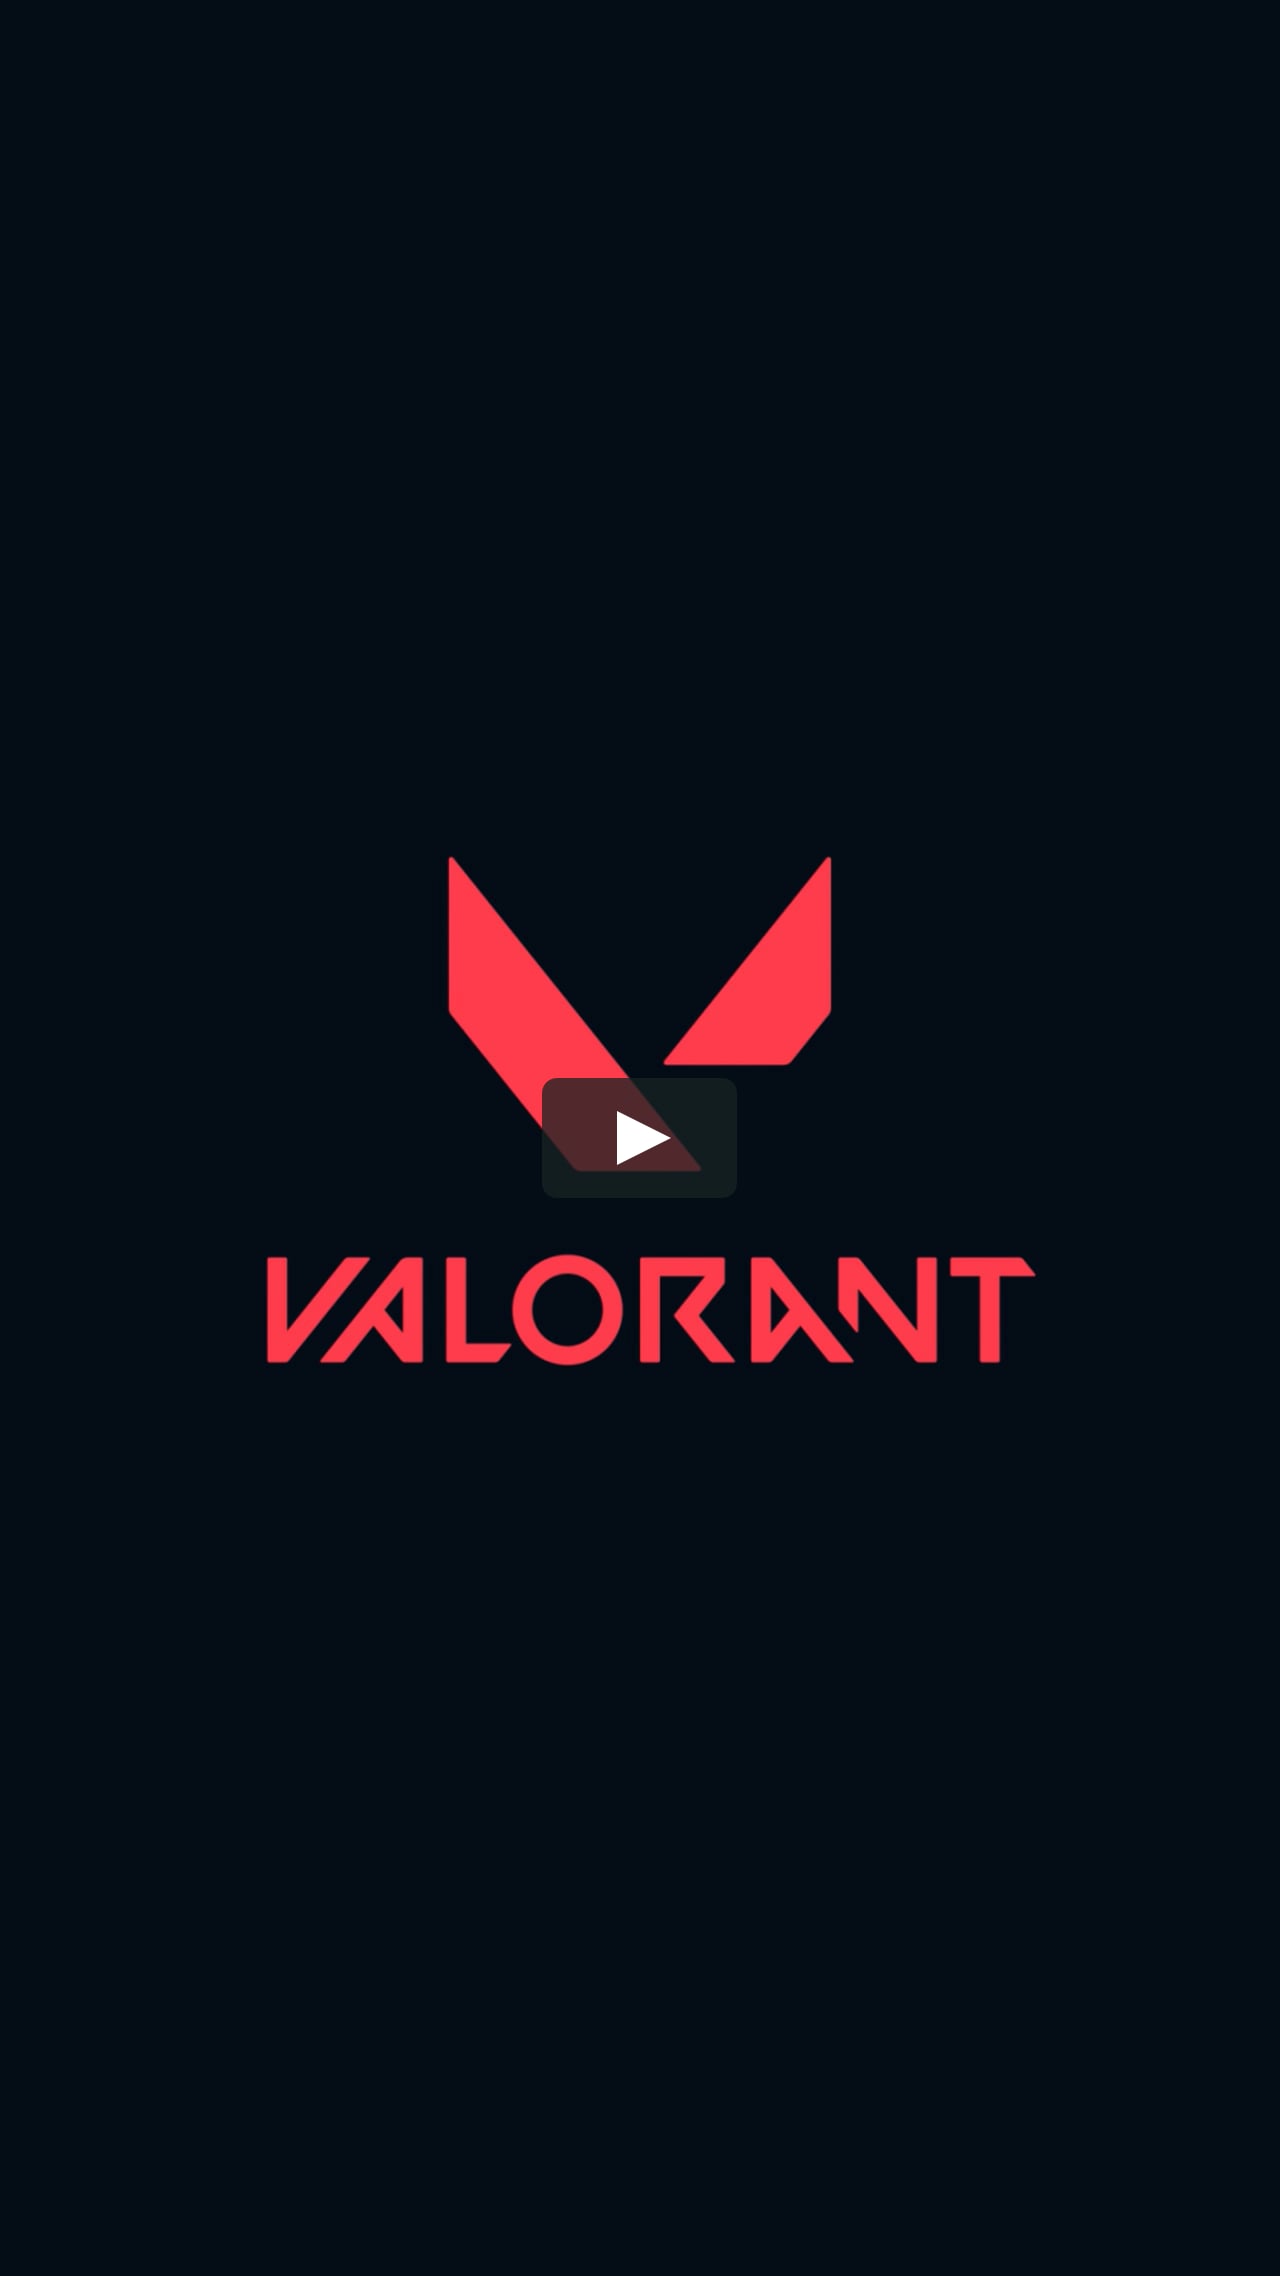 Making Of Valorant - Raze and Bomboot on Vimeo